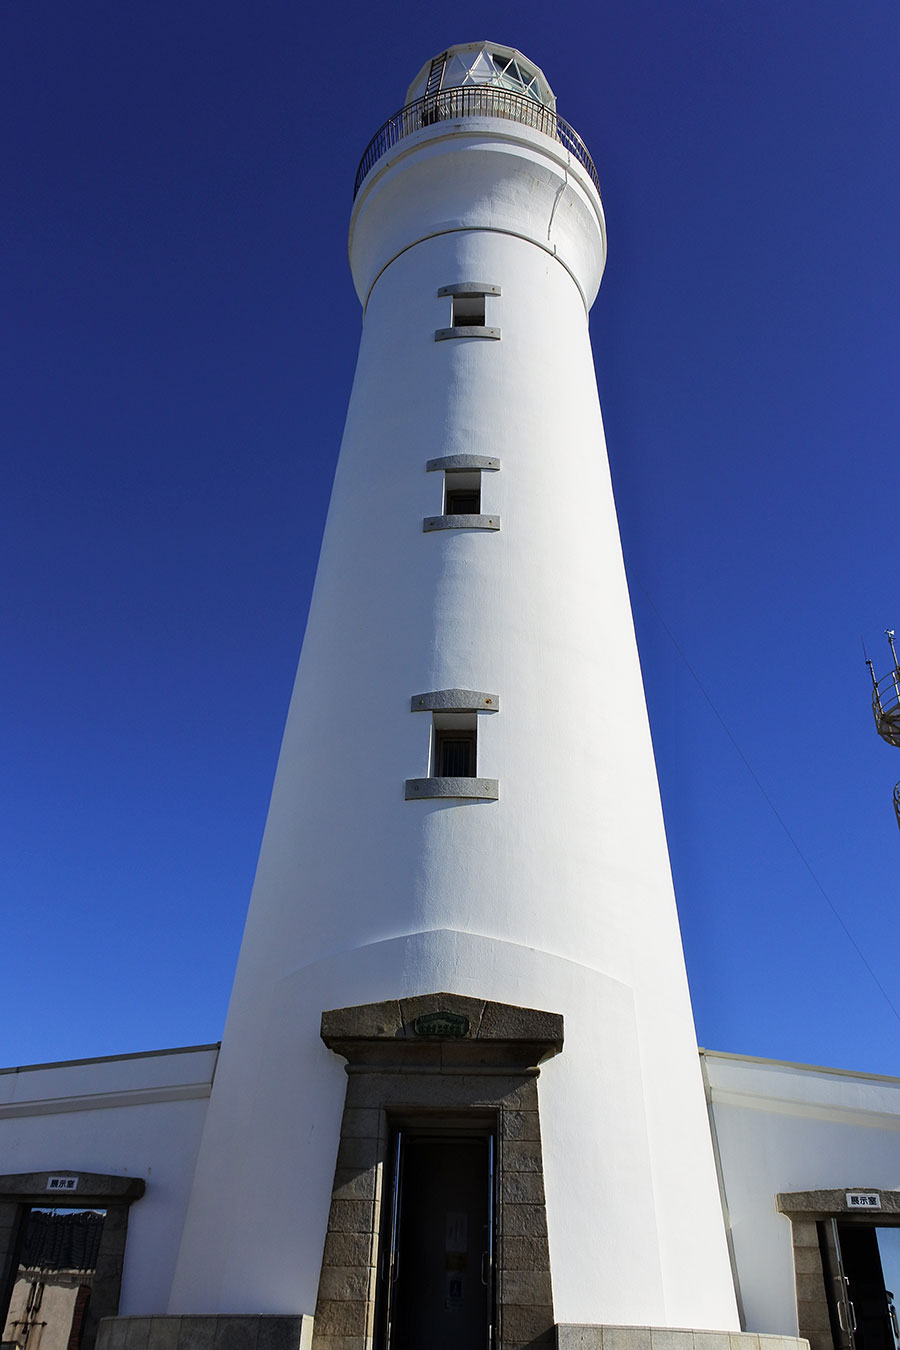 日本の灯台50選にも選ばれている犬吠埼灯台。